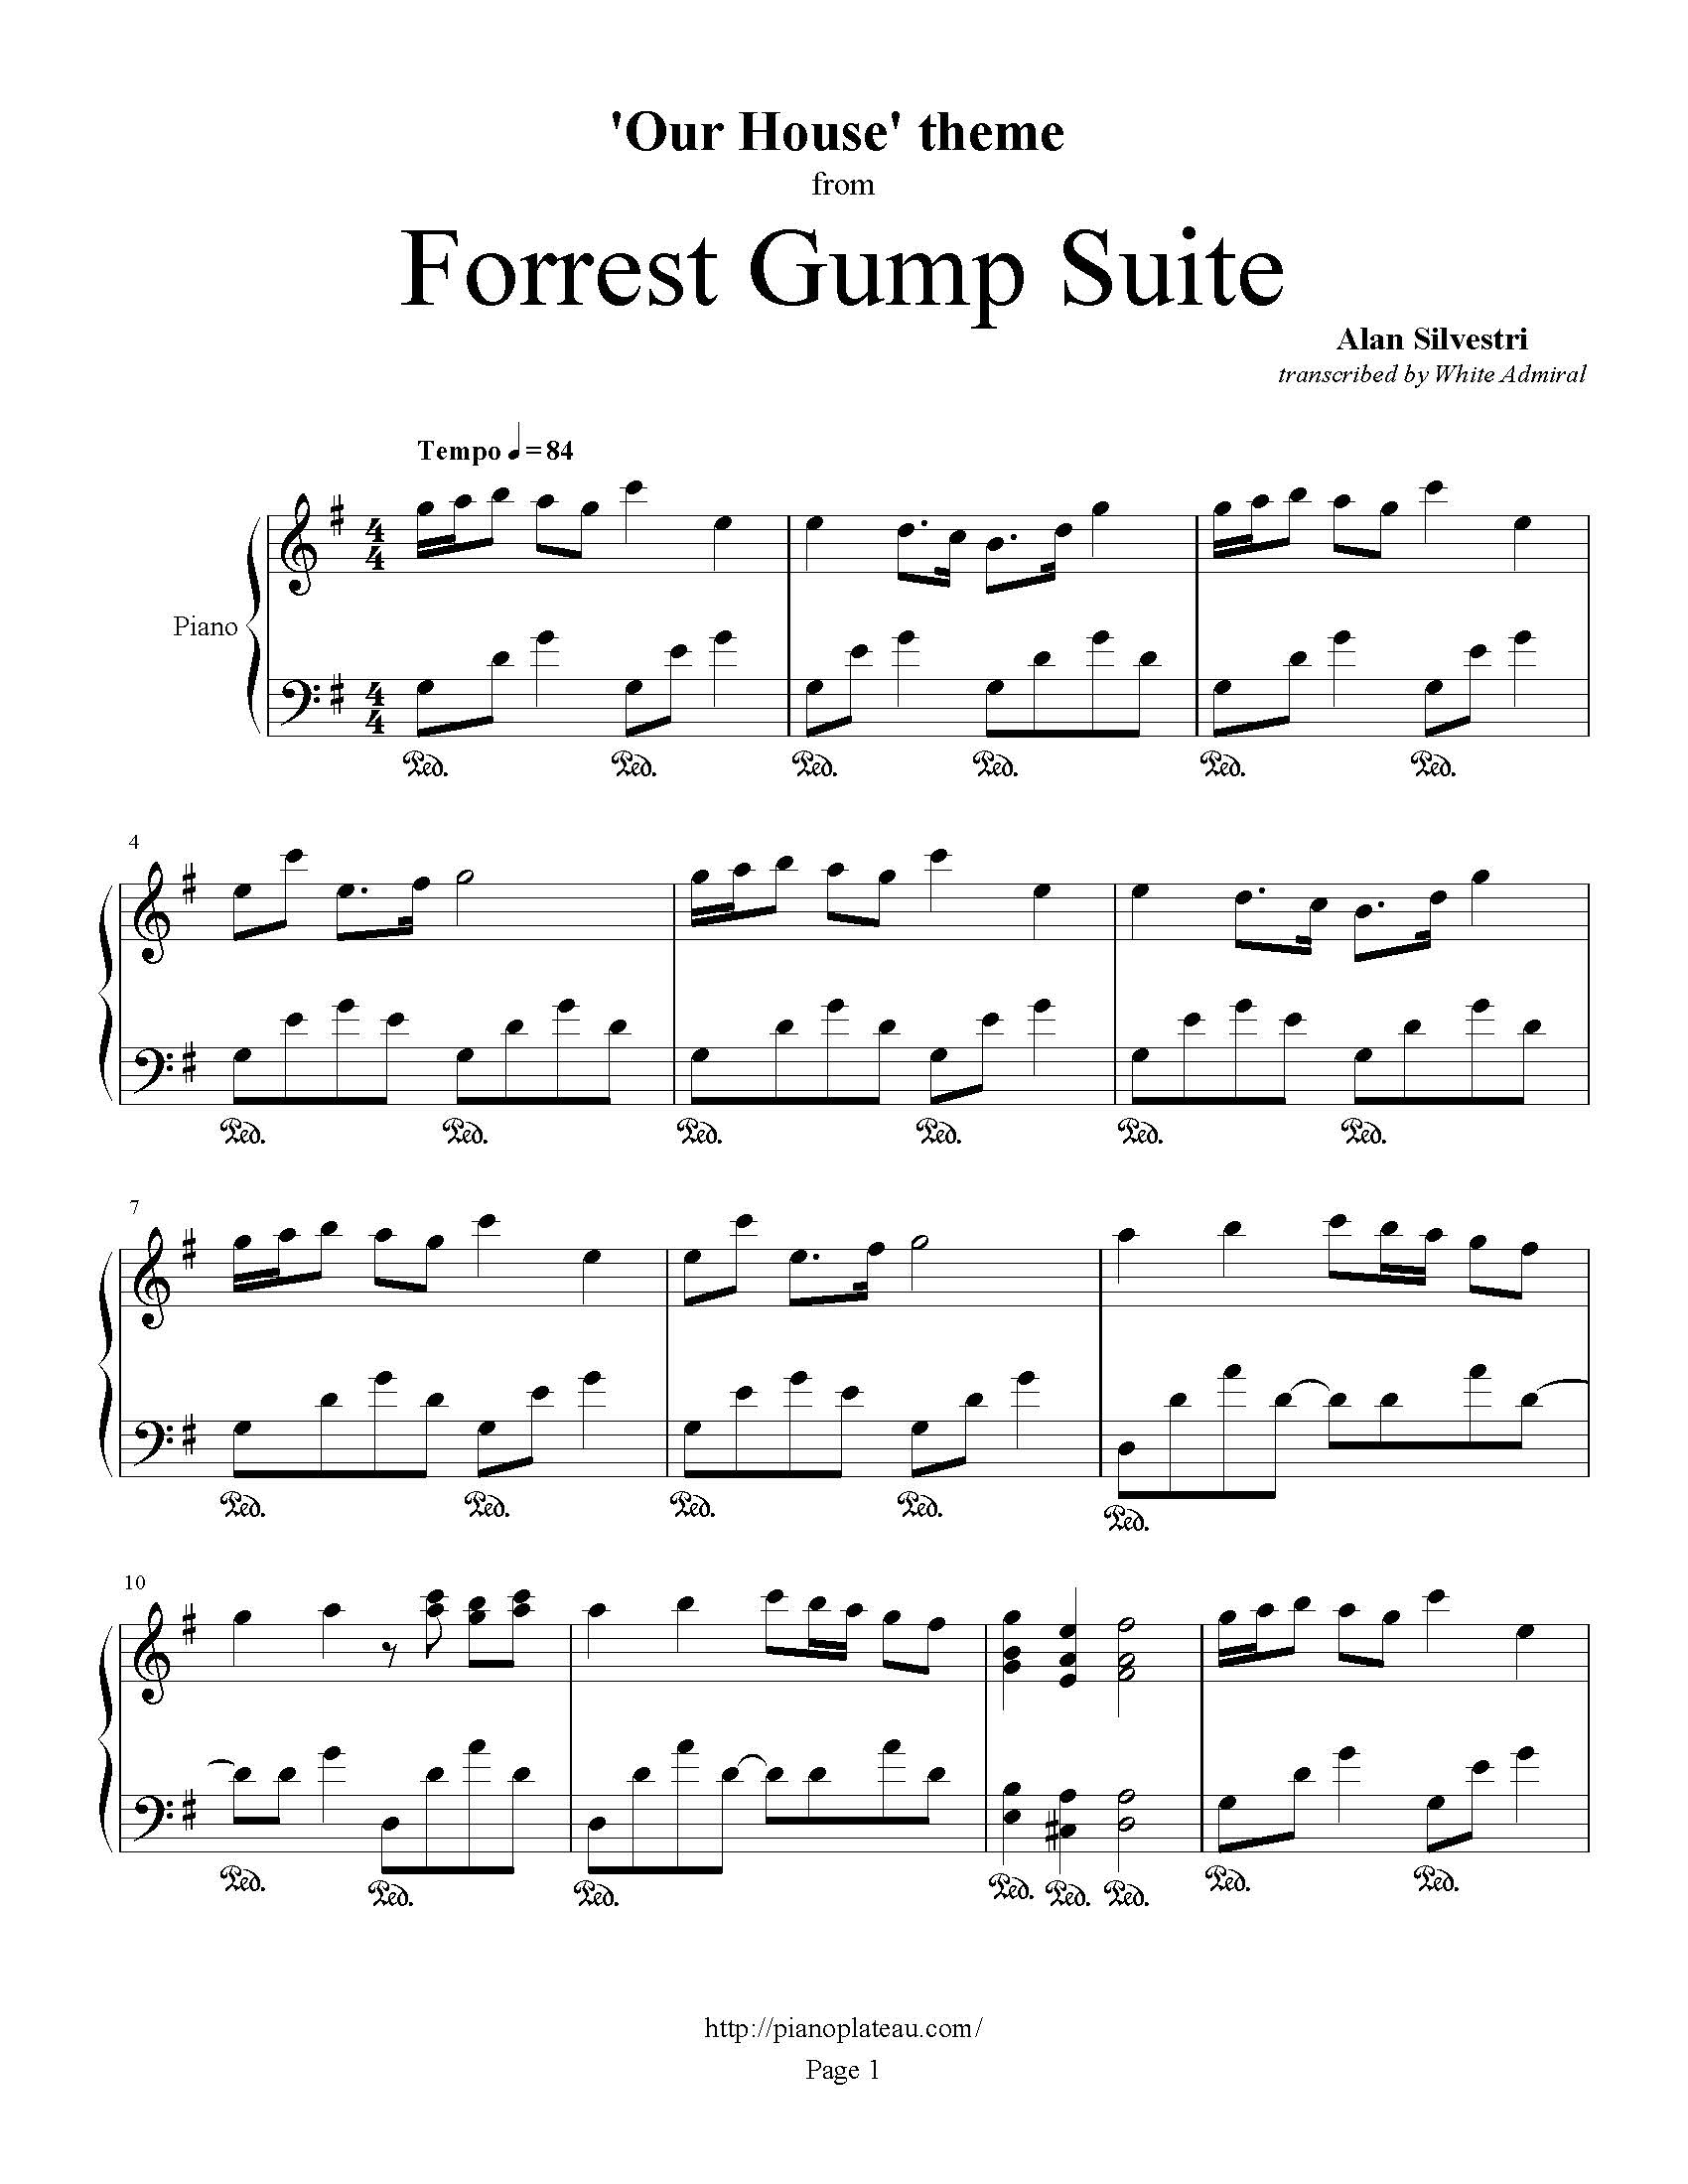 Forrest Gump Suite - Our House Theme | True Piano Transcriptions